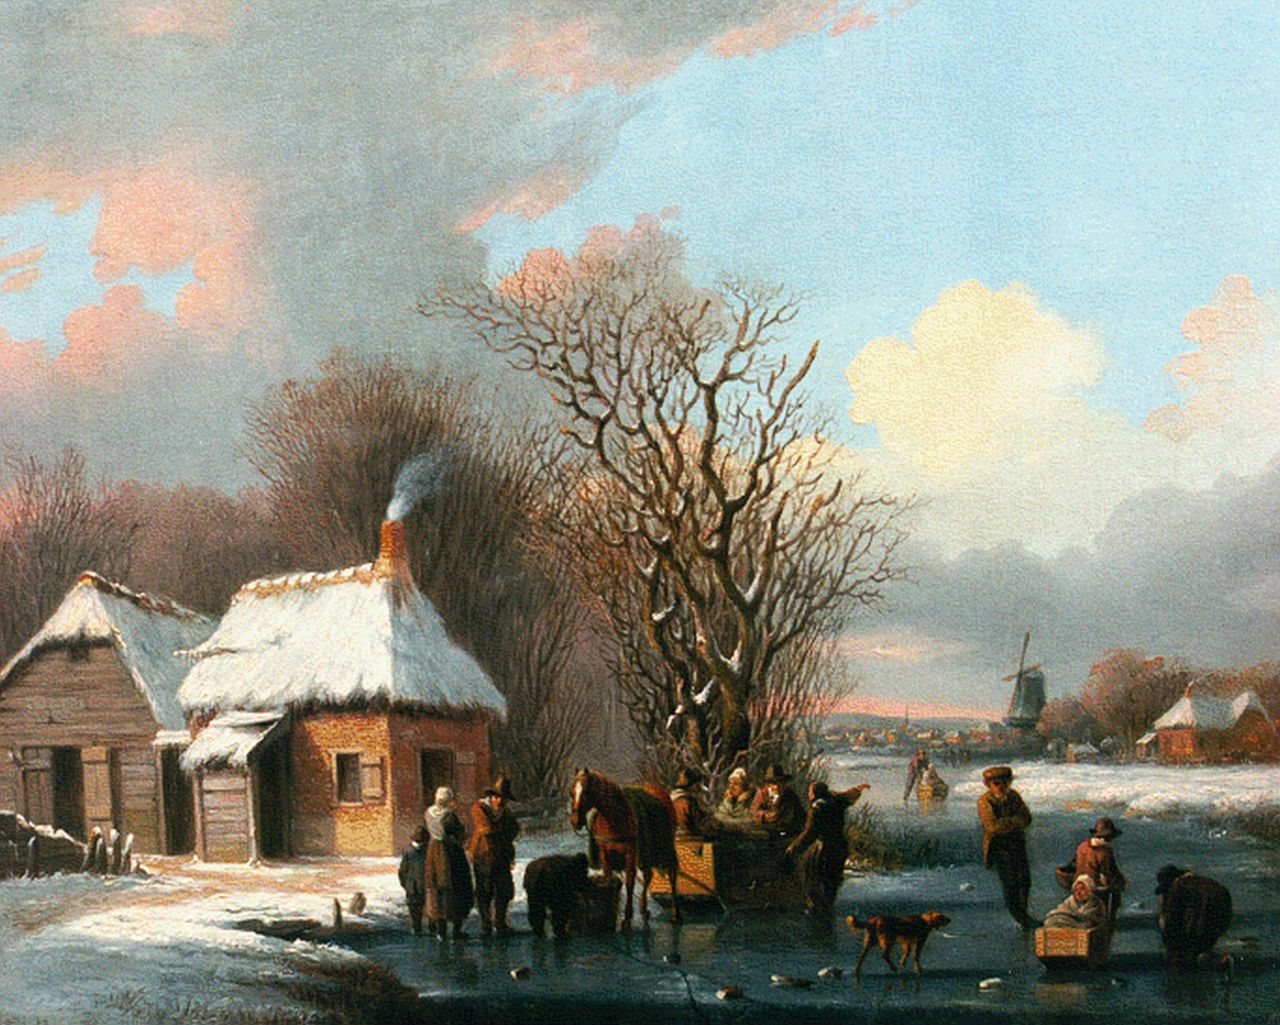 Stok J. van der | Jacobus van der Stok, Activities on a frozen waterway, oil on panel 22.3 x 27.0 cm, signed on a cart